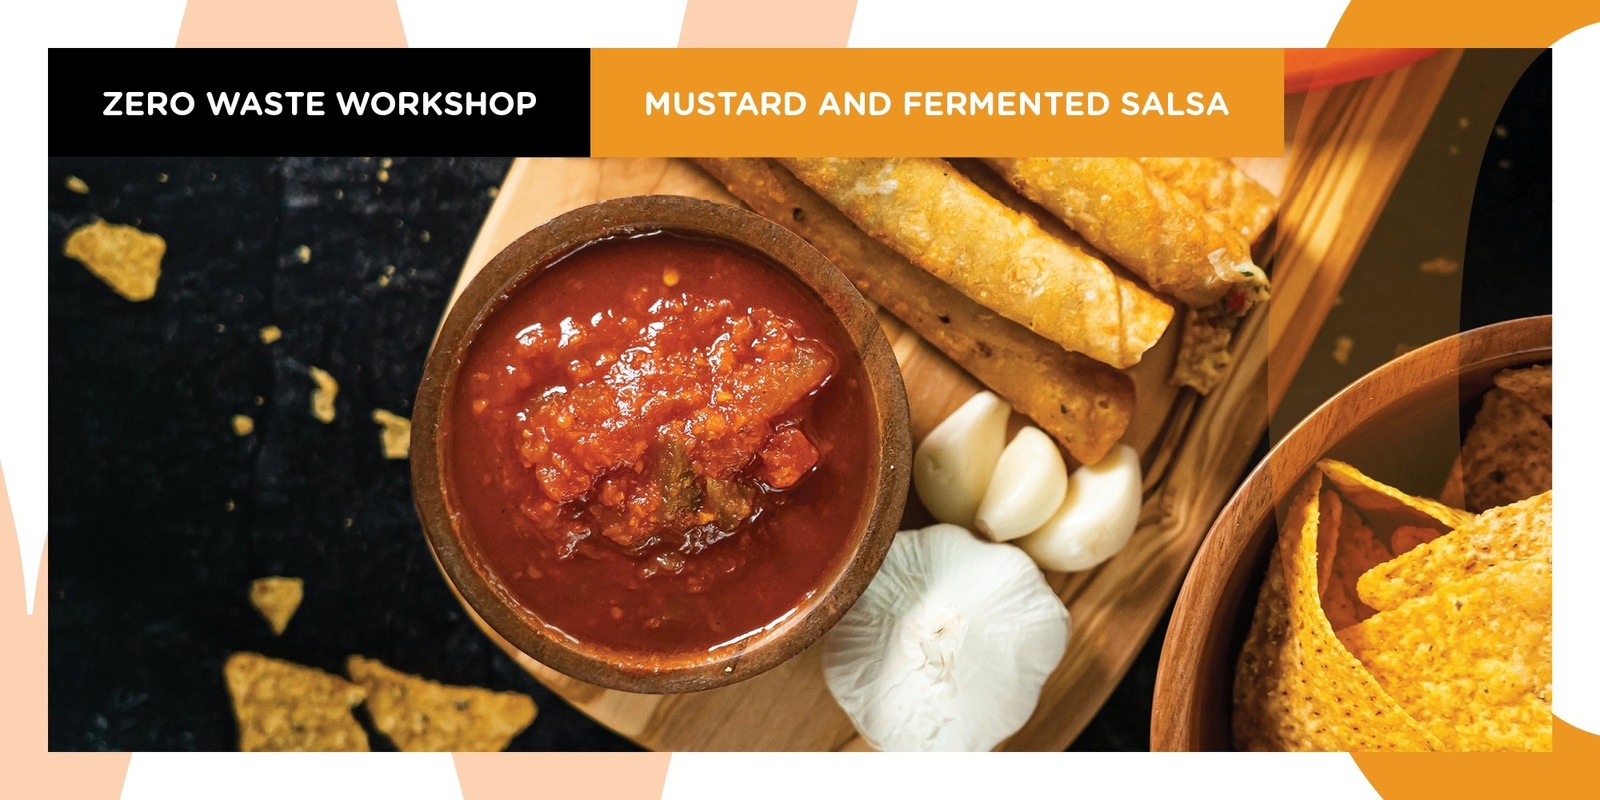 Mustards and Fermented Salsa - A Zero Waste Workshop with Araluen Hagan